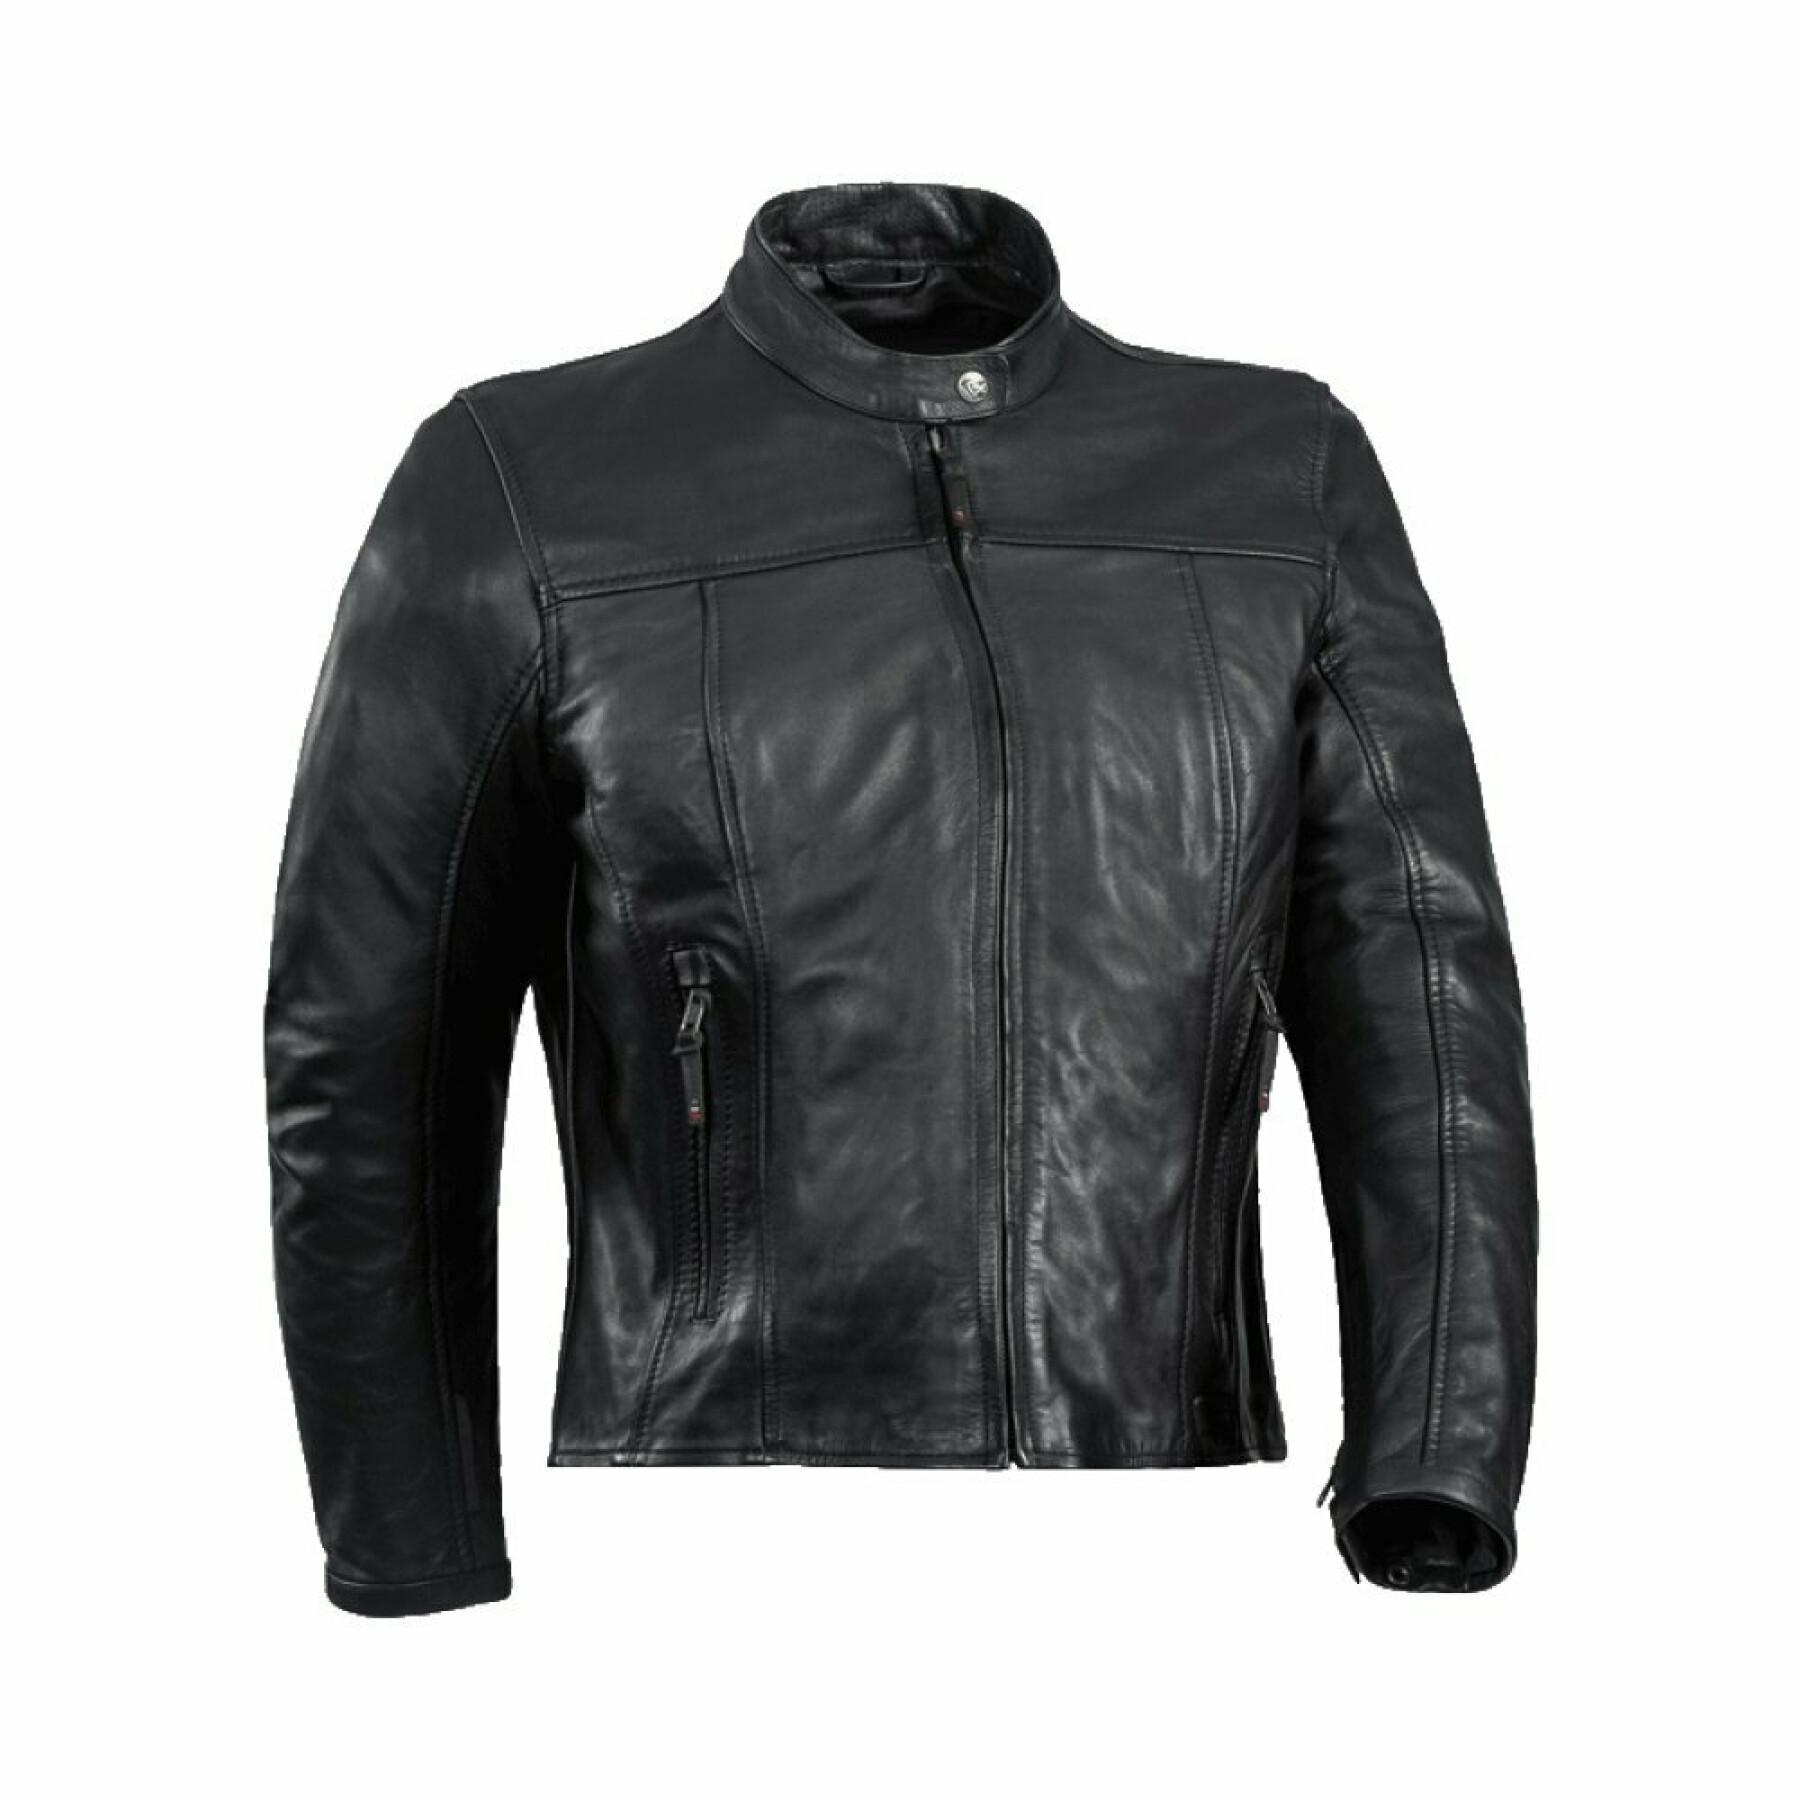 Leather jacket motorcycle woman Ixon crank c